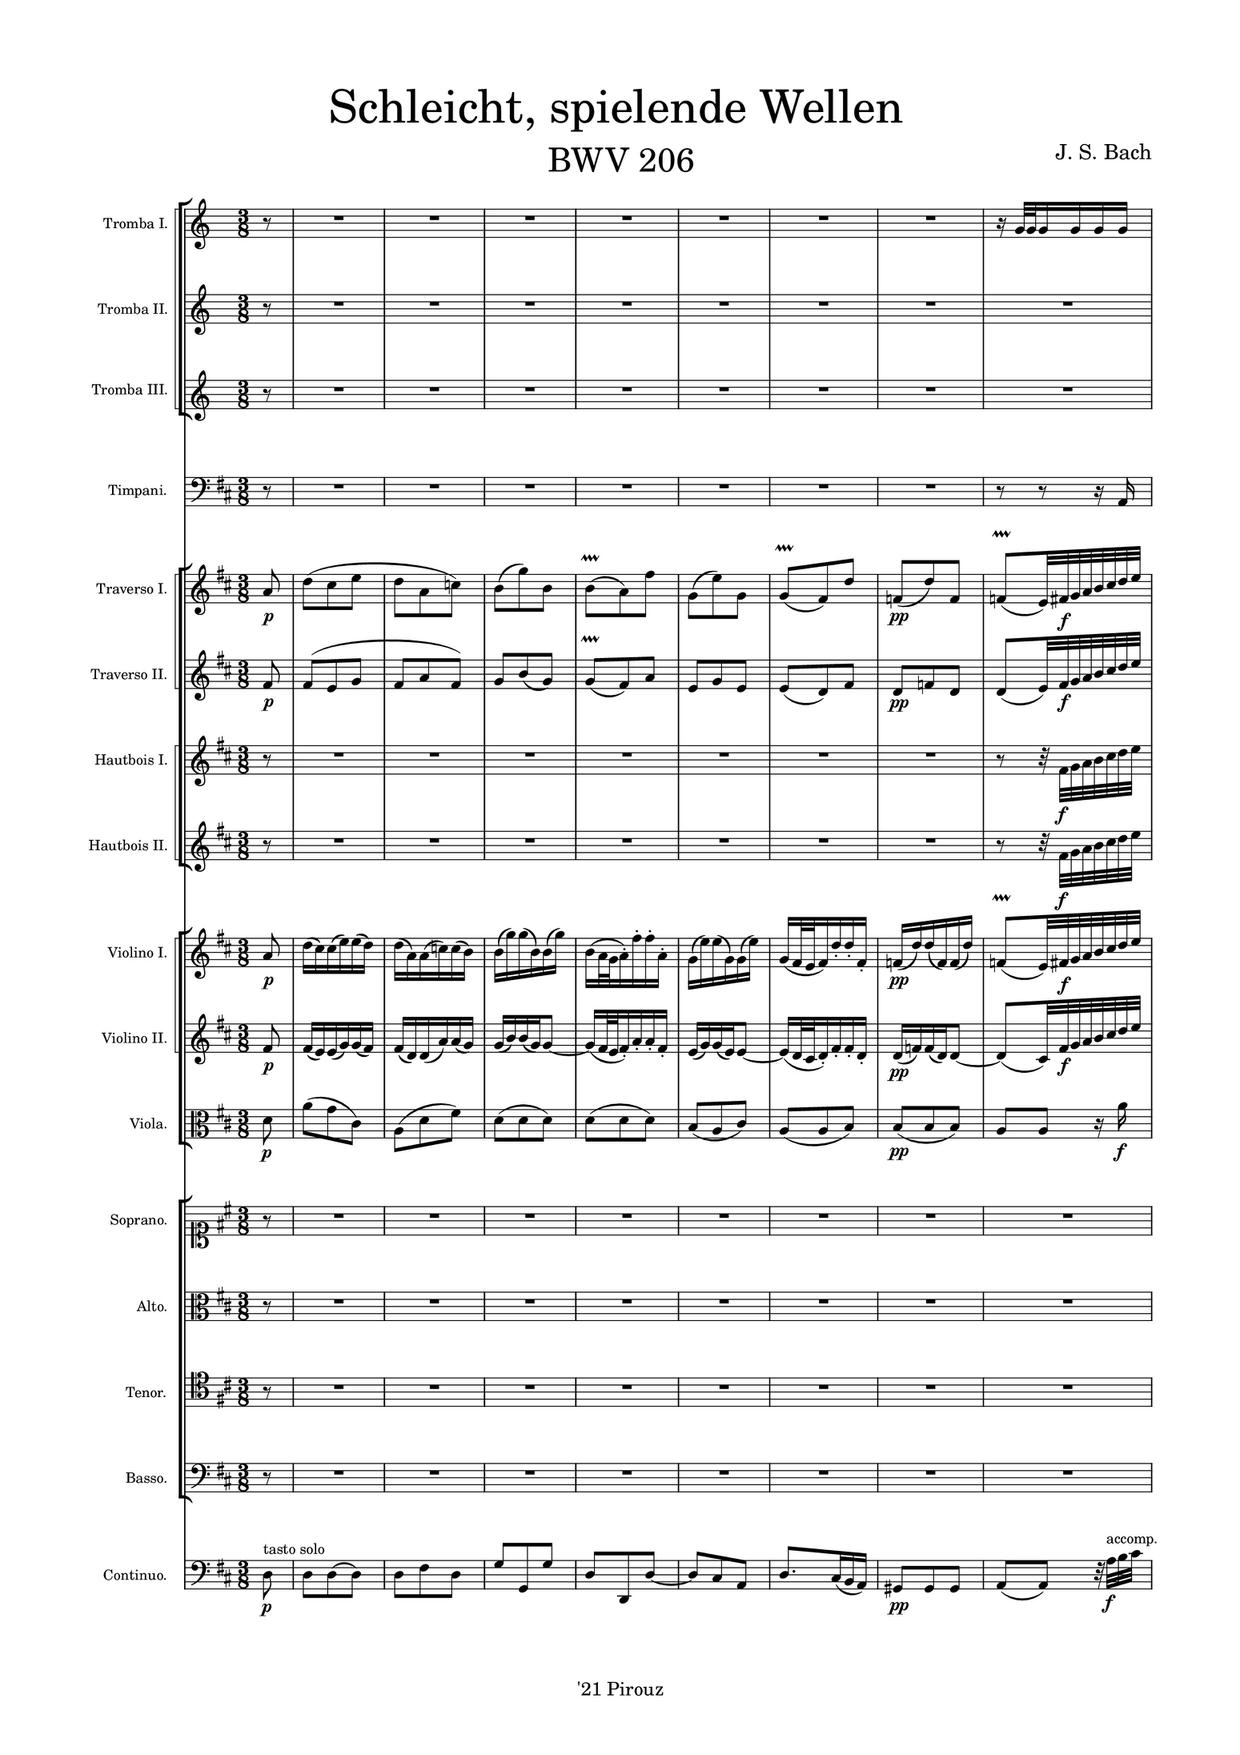 Schleicht, Spielende Wellen, BWV 206ピアノ譜